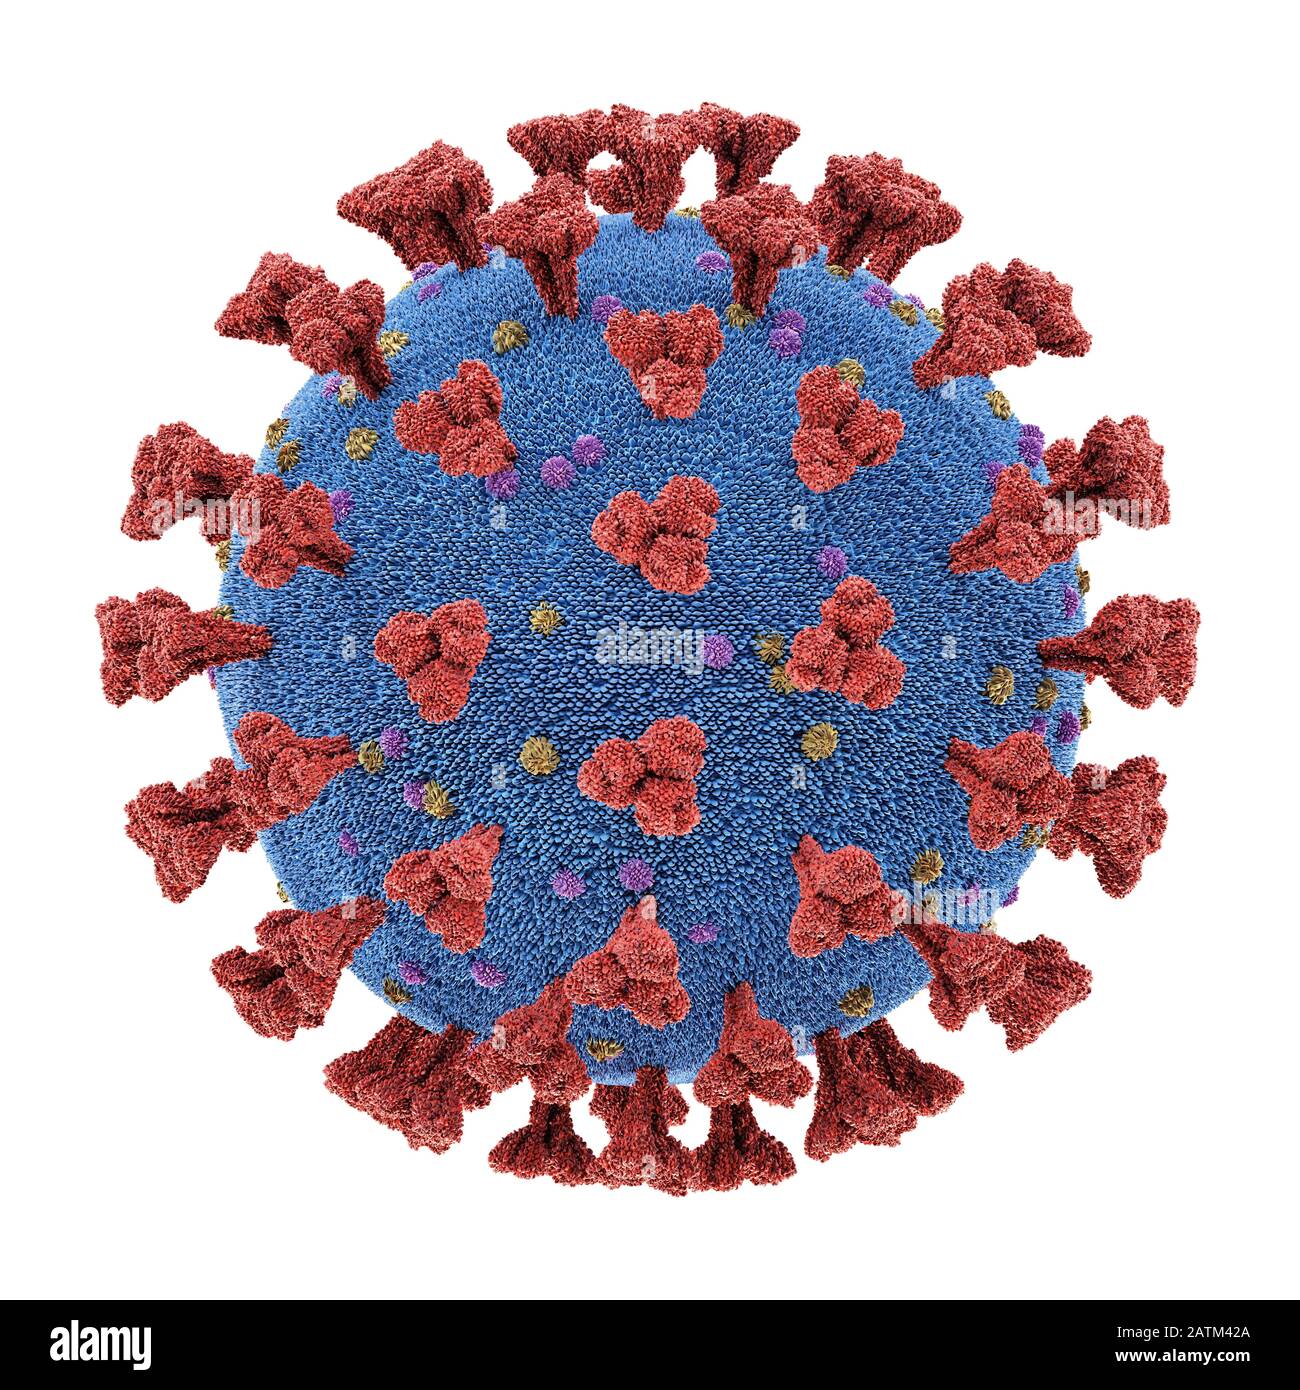 Coronavirus, groupe de virus qui causent des maladies chez les mammifères et les oiseaux. Chez l'homme, le virus cause des infections respiratoires. Illustration tridimensionnelle, conceptua Banque D'Images